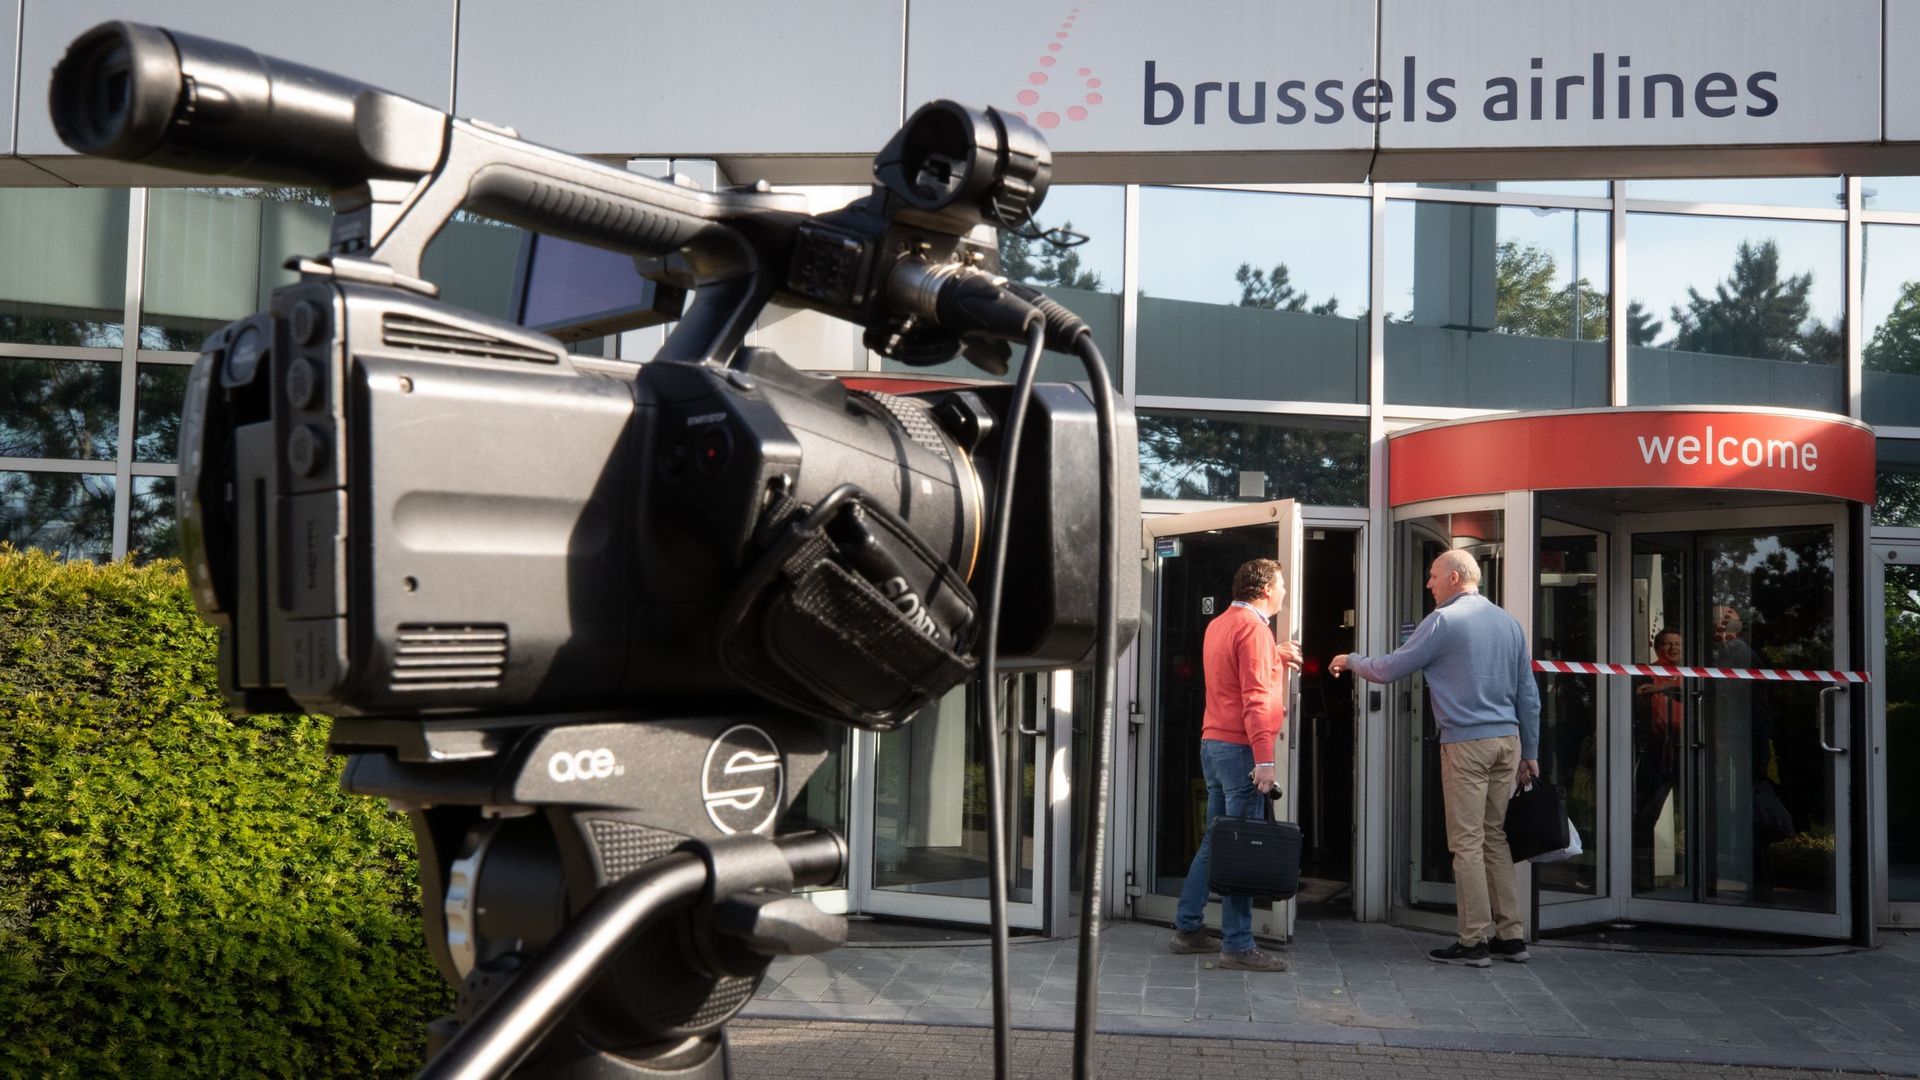 Brussels Airlines : direction et syndicats campent sur leurs positions: "on tourne en rond", déplore la CNE